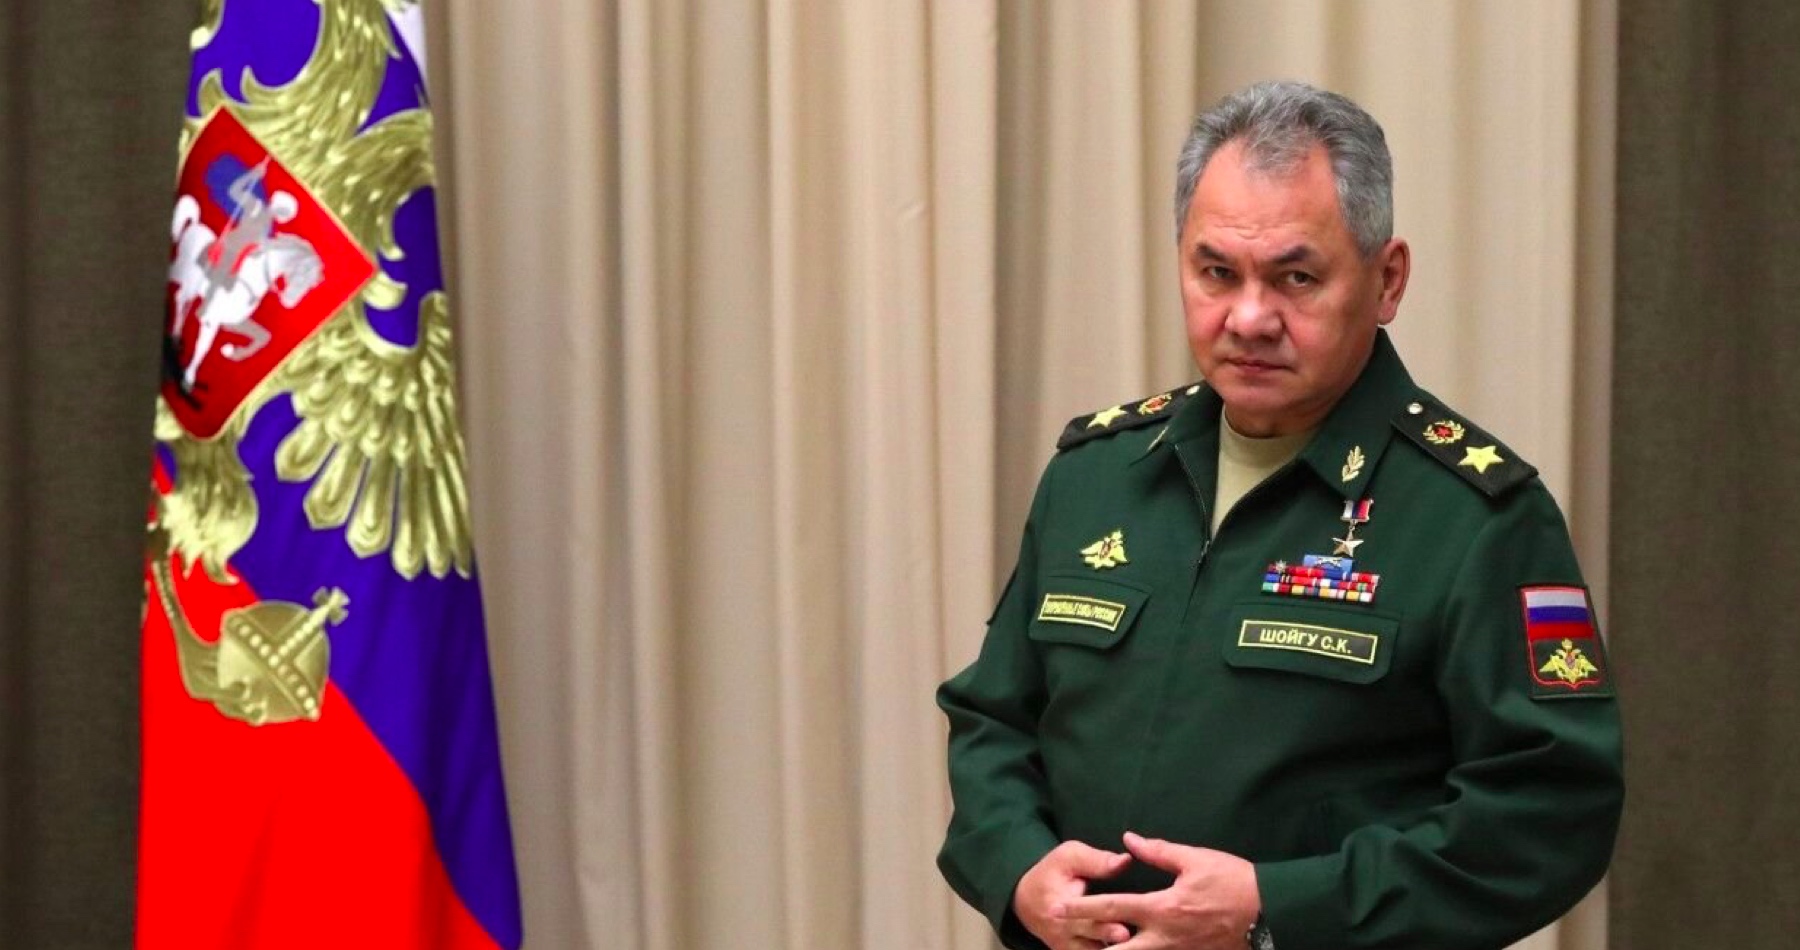 Šojgu by sa mal zastreliť, odporučil predstaviteľ ruskej okupačnej správy ruskému ministrovi obrany v reakcii na stratu území v Chersonskej oblasti